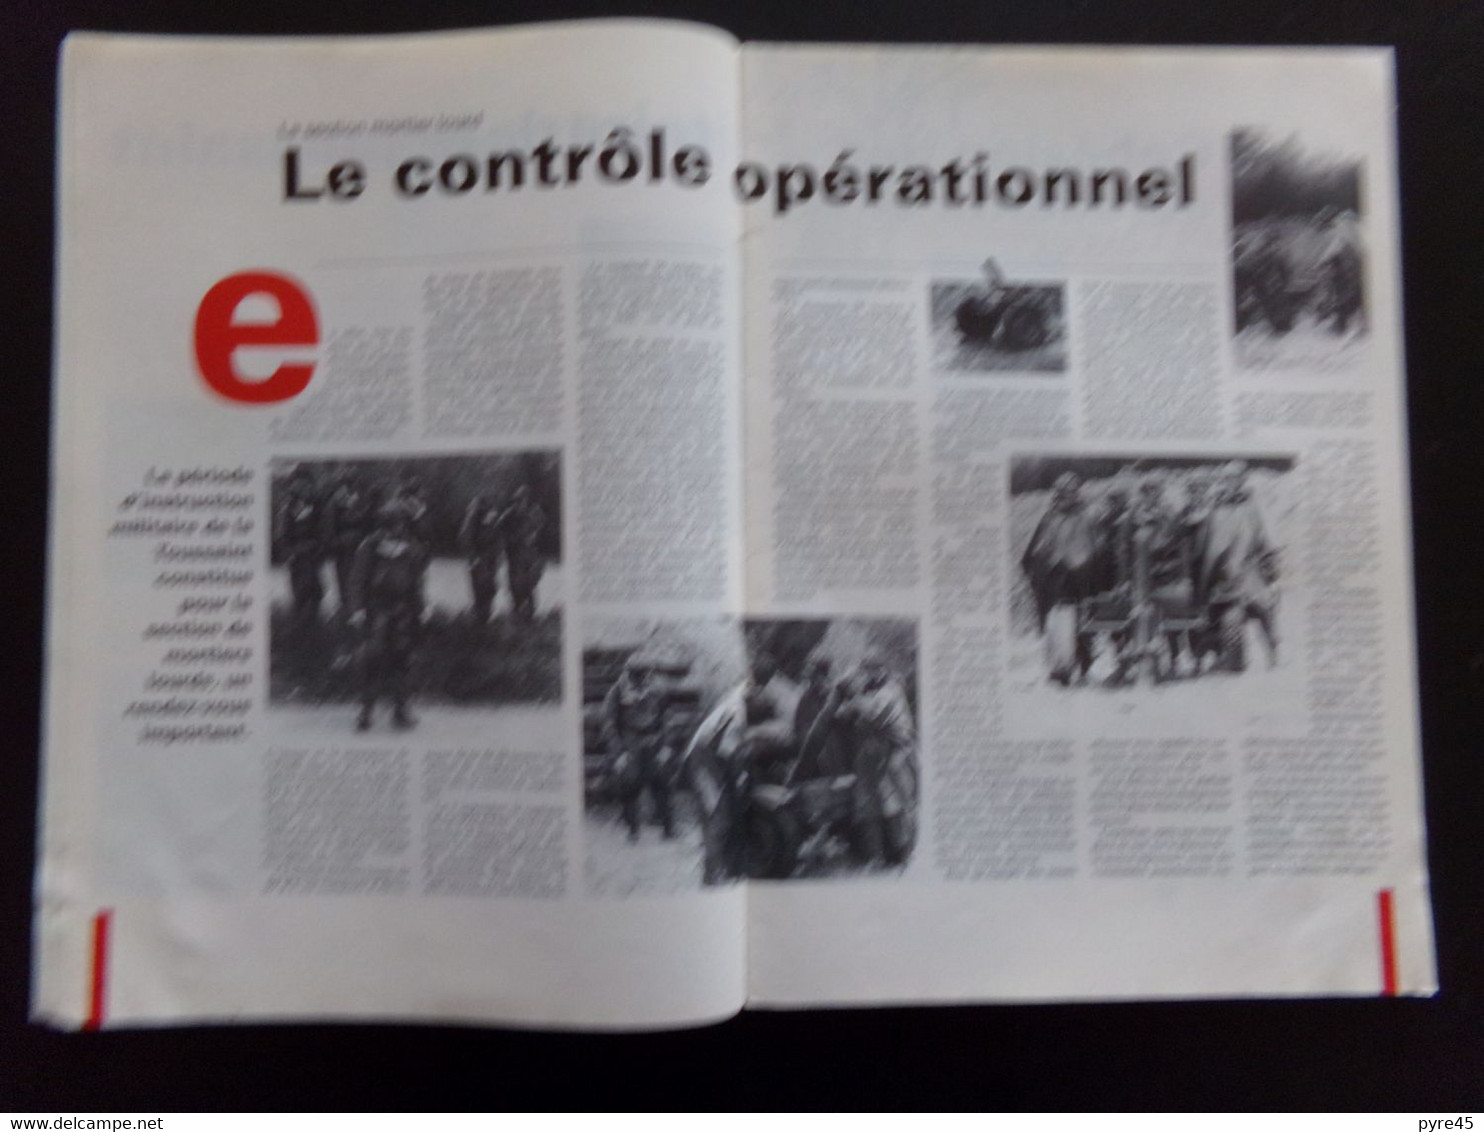 Issoire Actualité, N° 19, 1991, Ecole Nationale Technique Des Sous-officiers D'active, 38 Pages - Frankreich